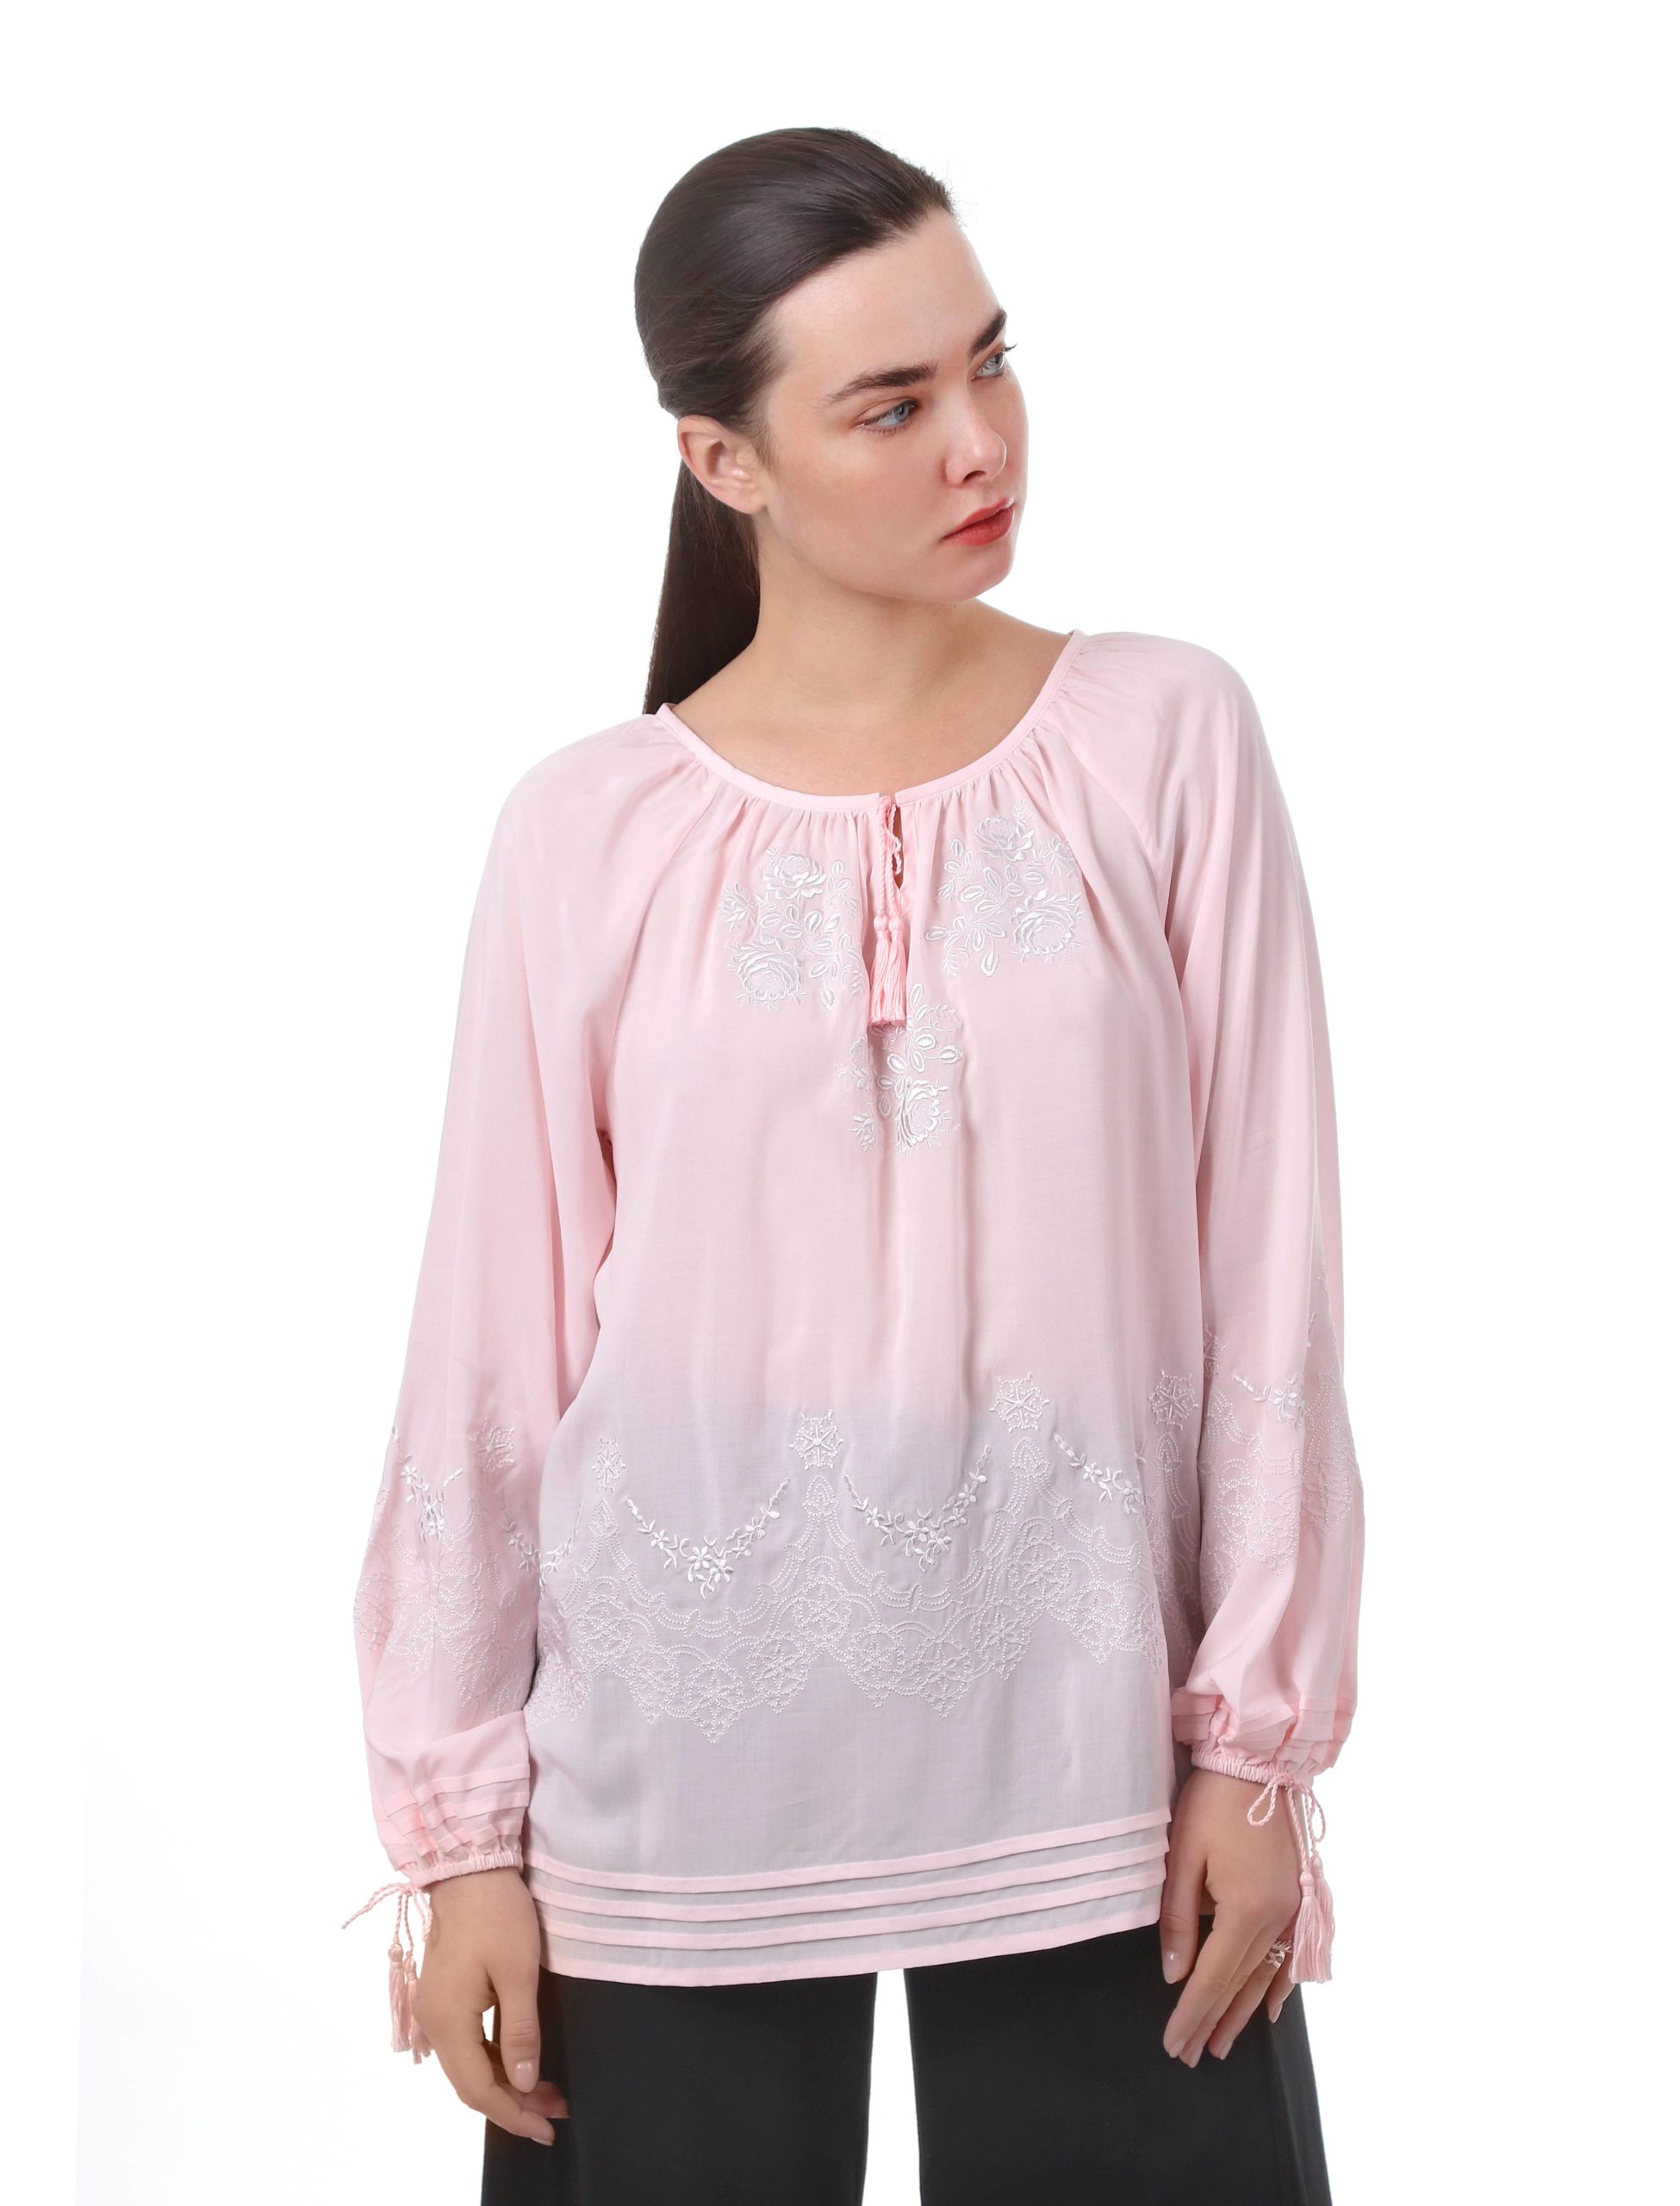 Блуза с вышивкой «Роза ажур» (розовая)